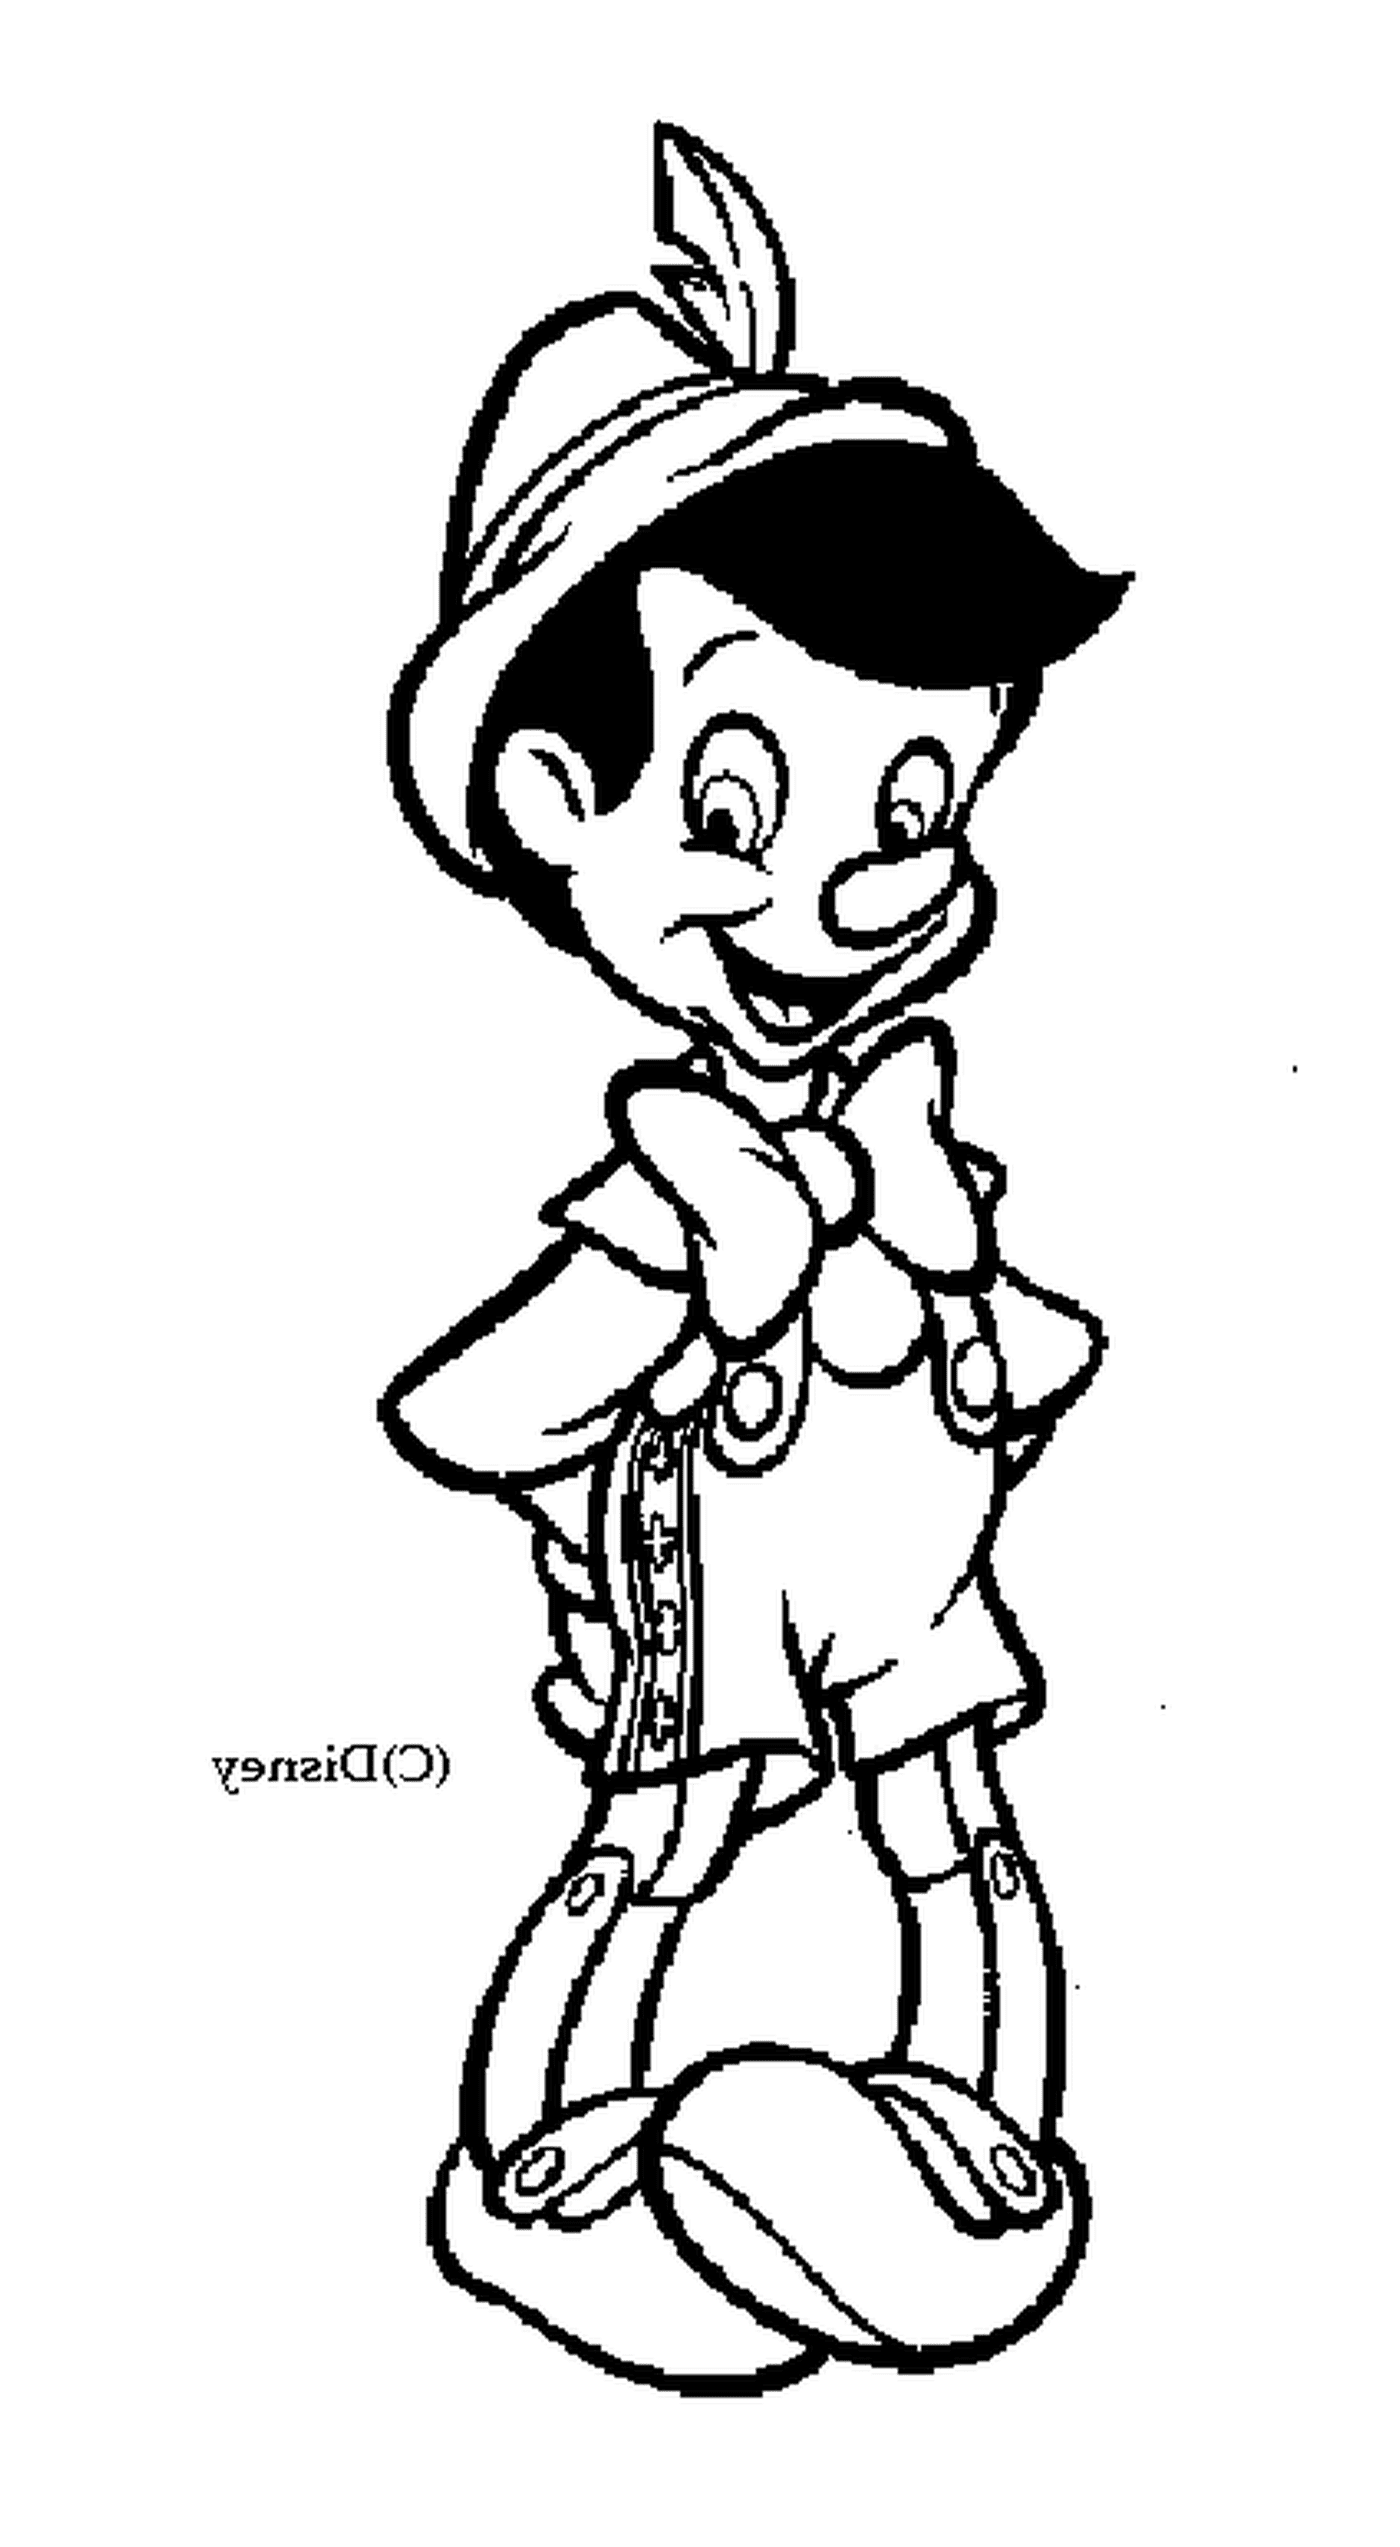  Пиноккио, персонаж Дисней любил 